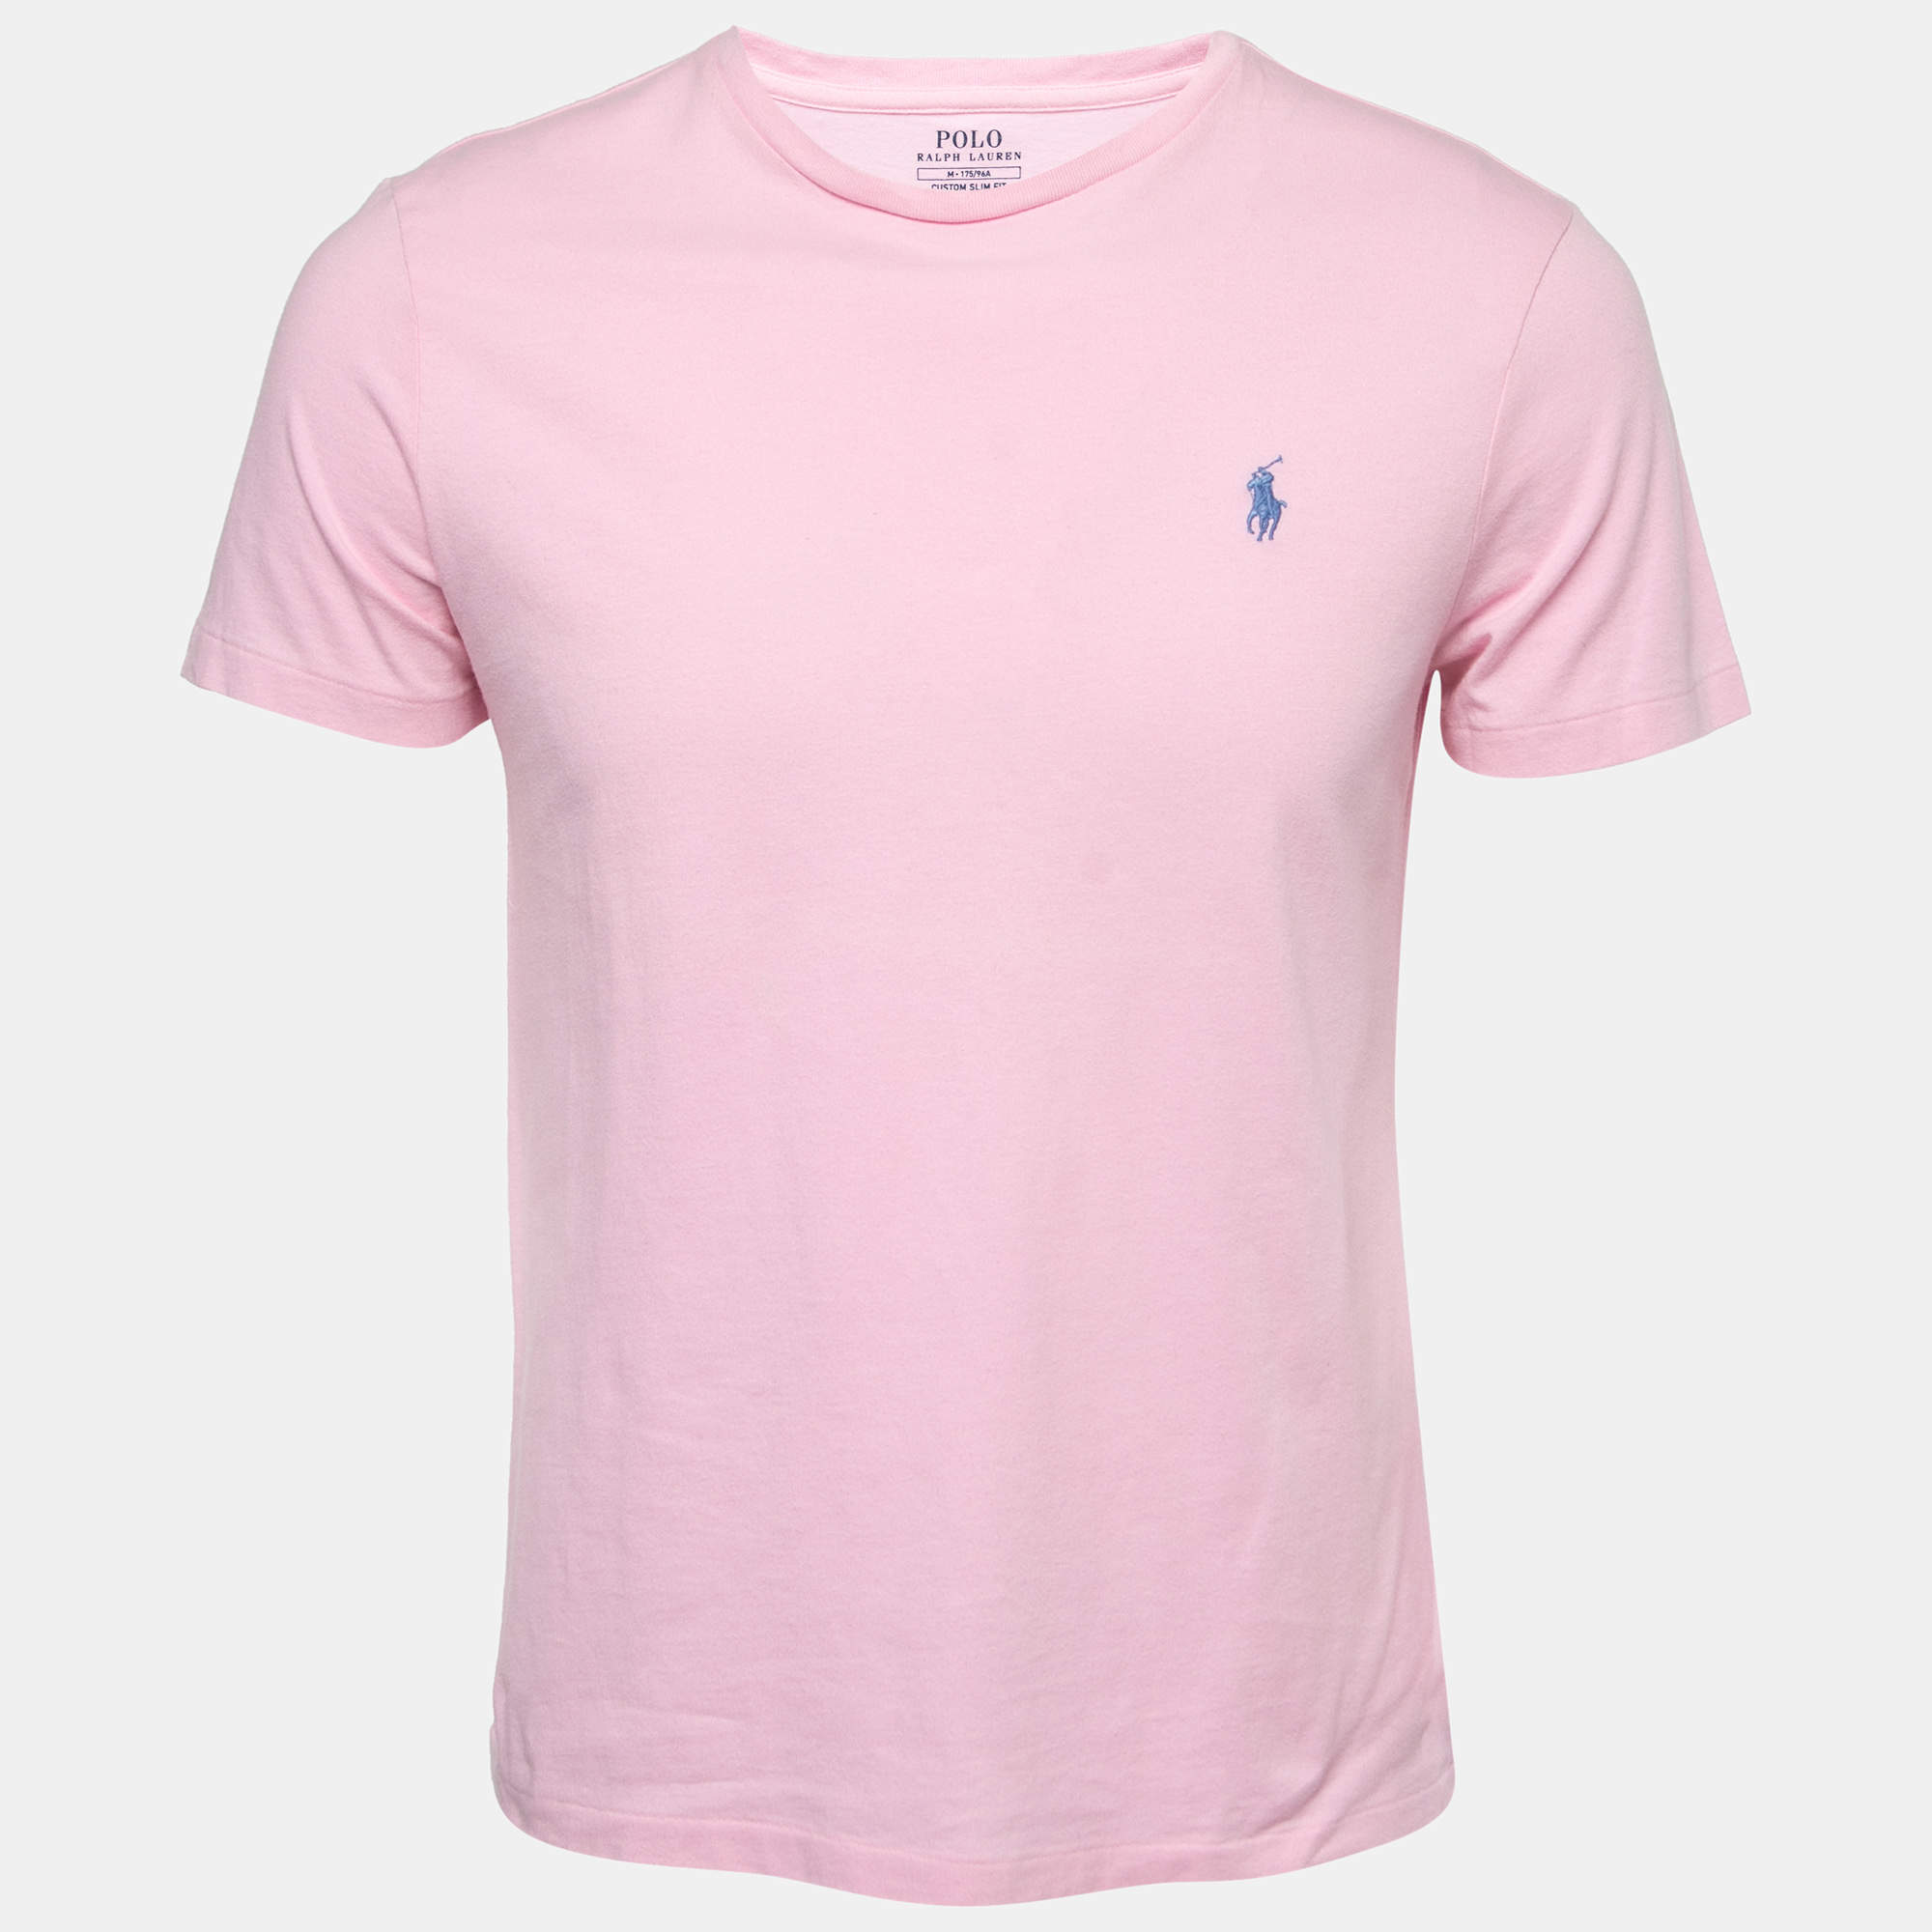 ralph lauren shirts pink